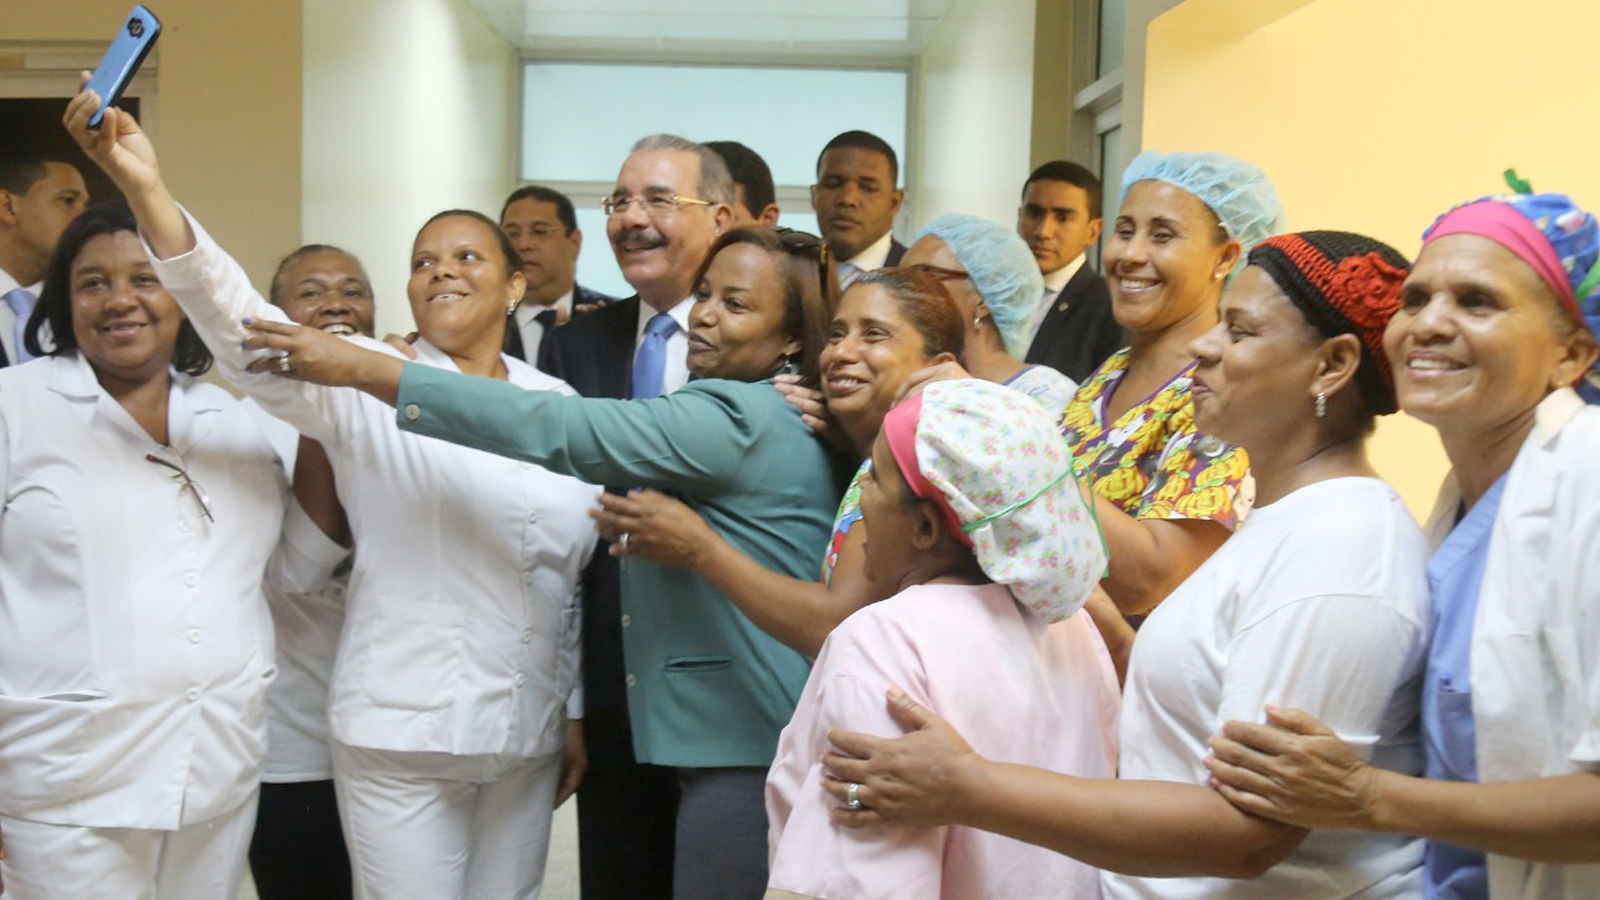 REPÚBLICA DOMINICANA: Presidente Danilo Medina felicita a todas las personas dedicadas al noble oficio de la enfermería